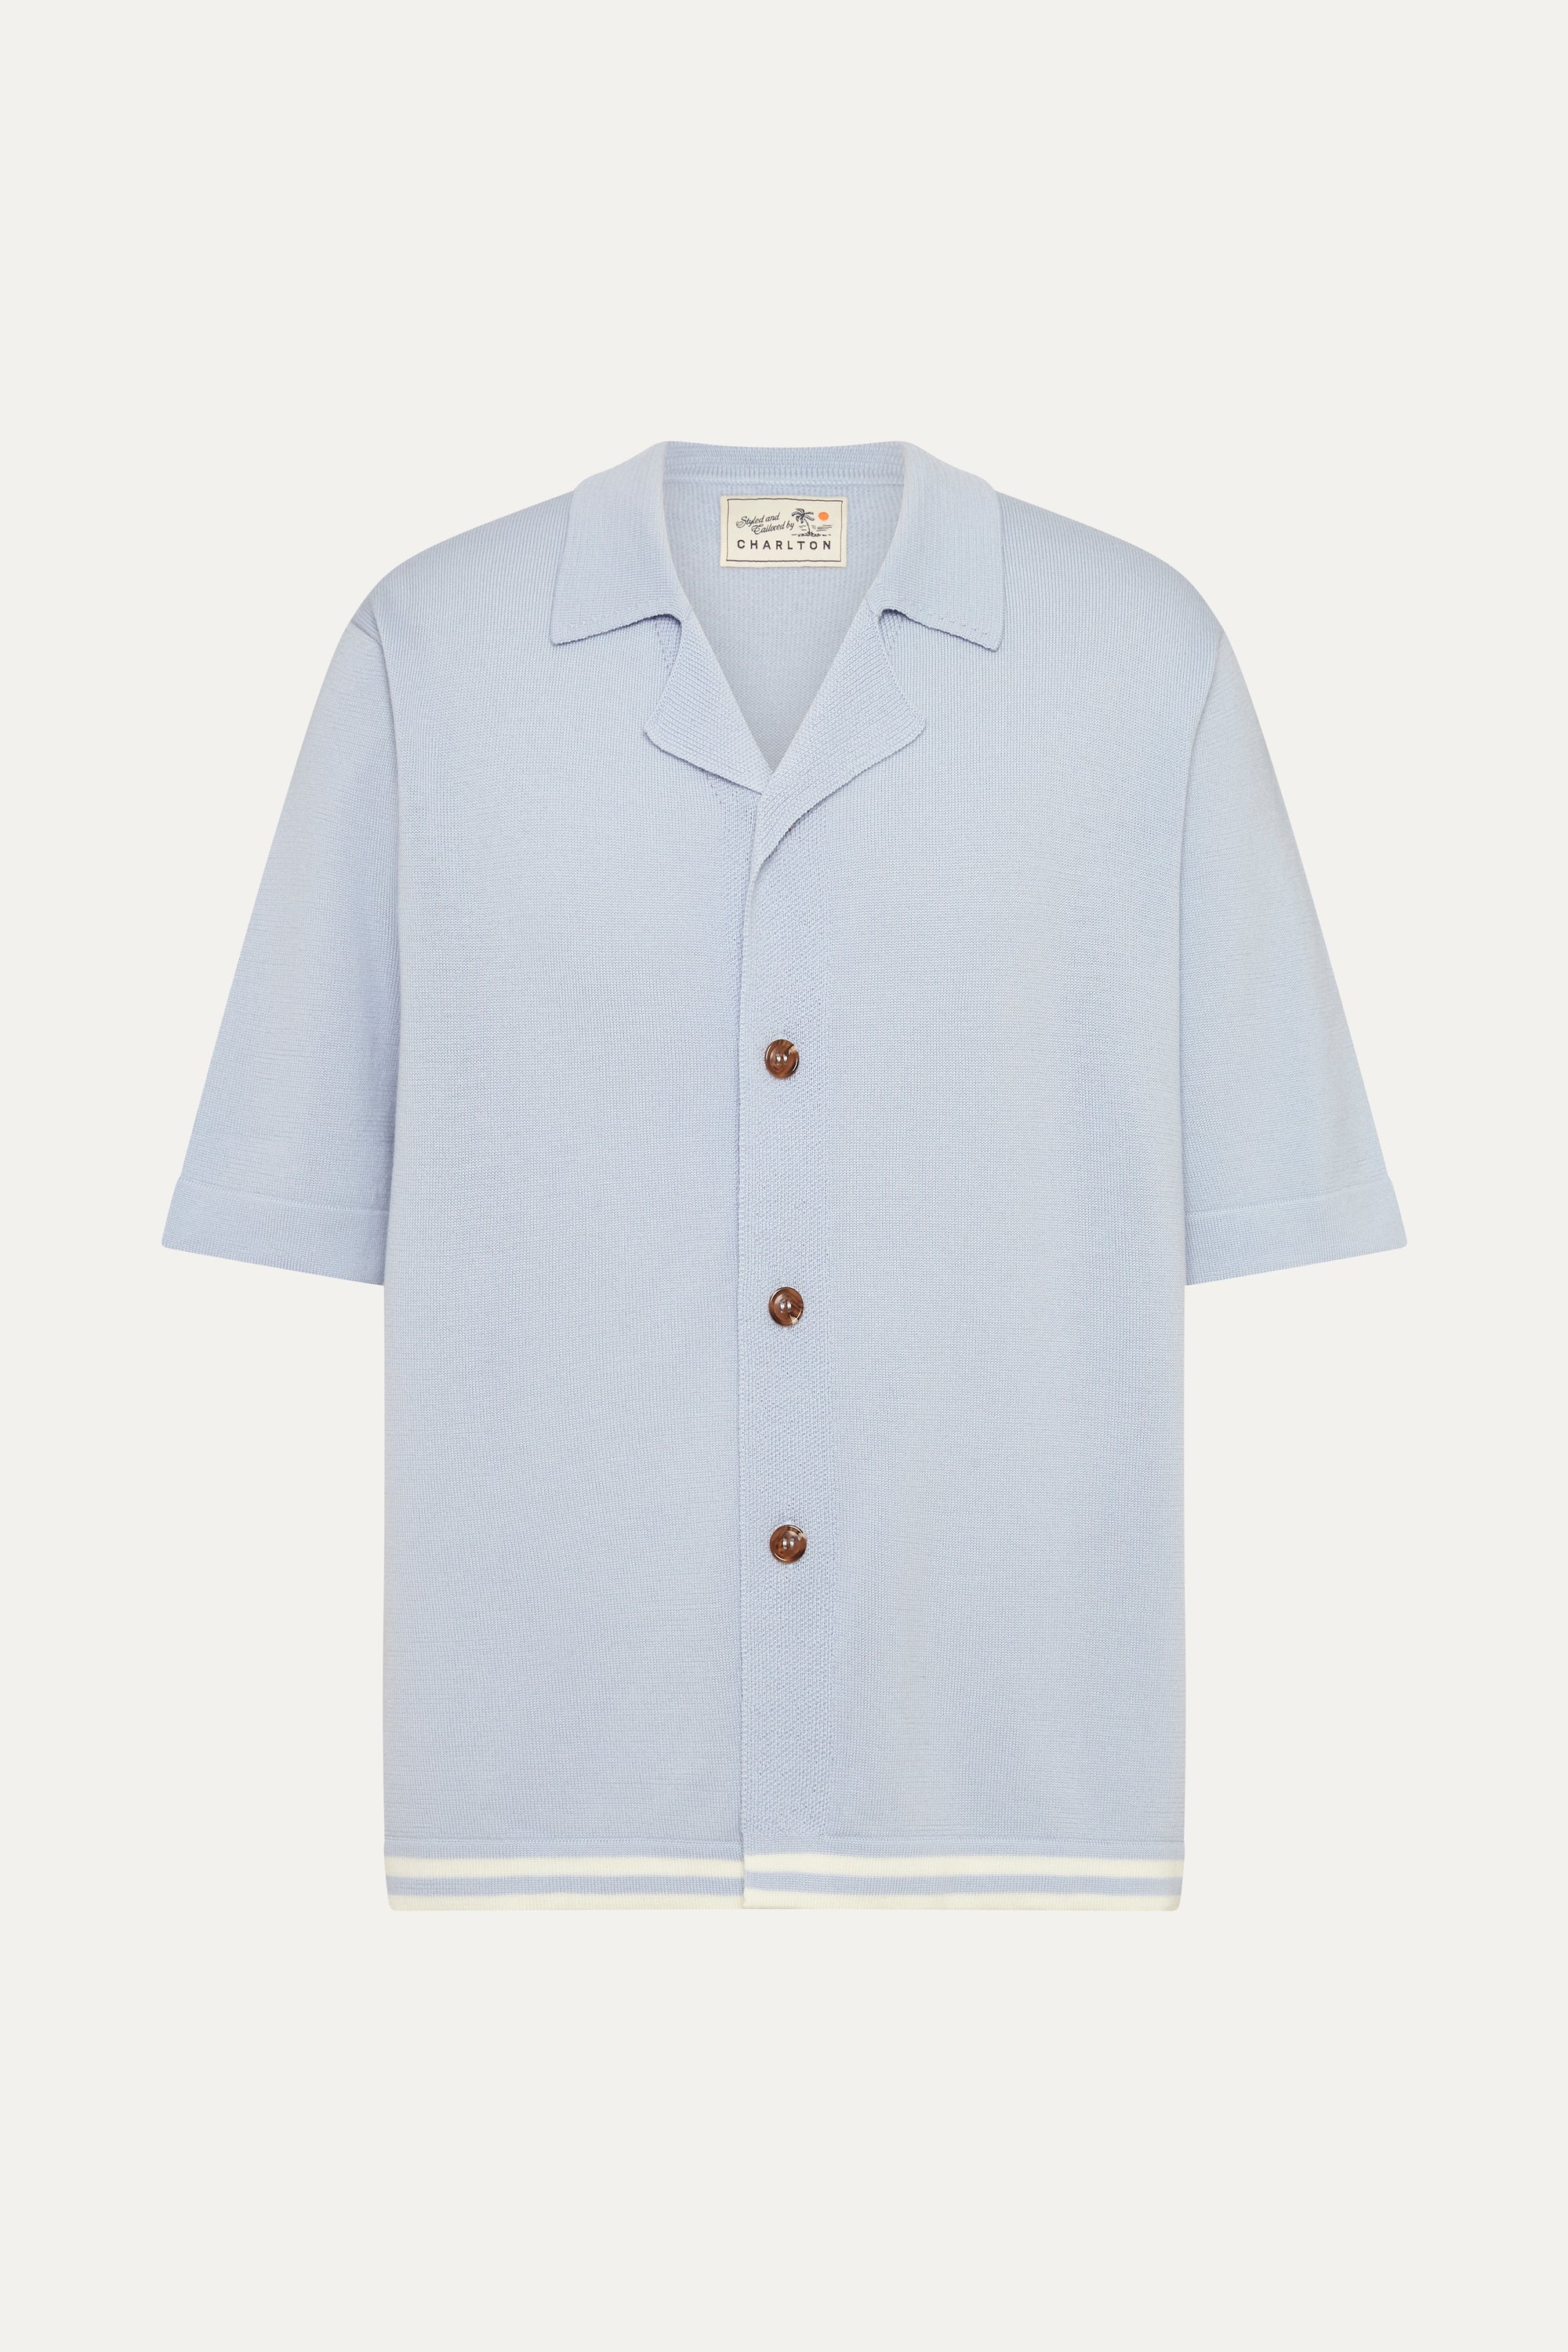 S/S Shirt in 'Sky Blue' Merino Wool